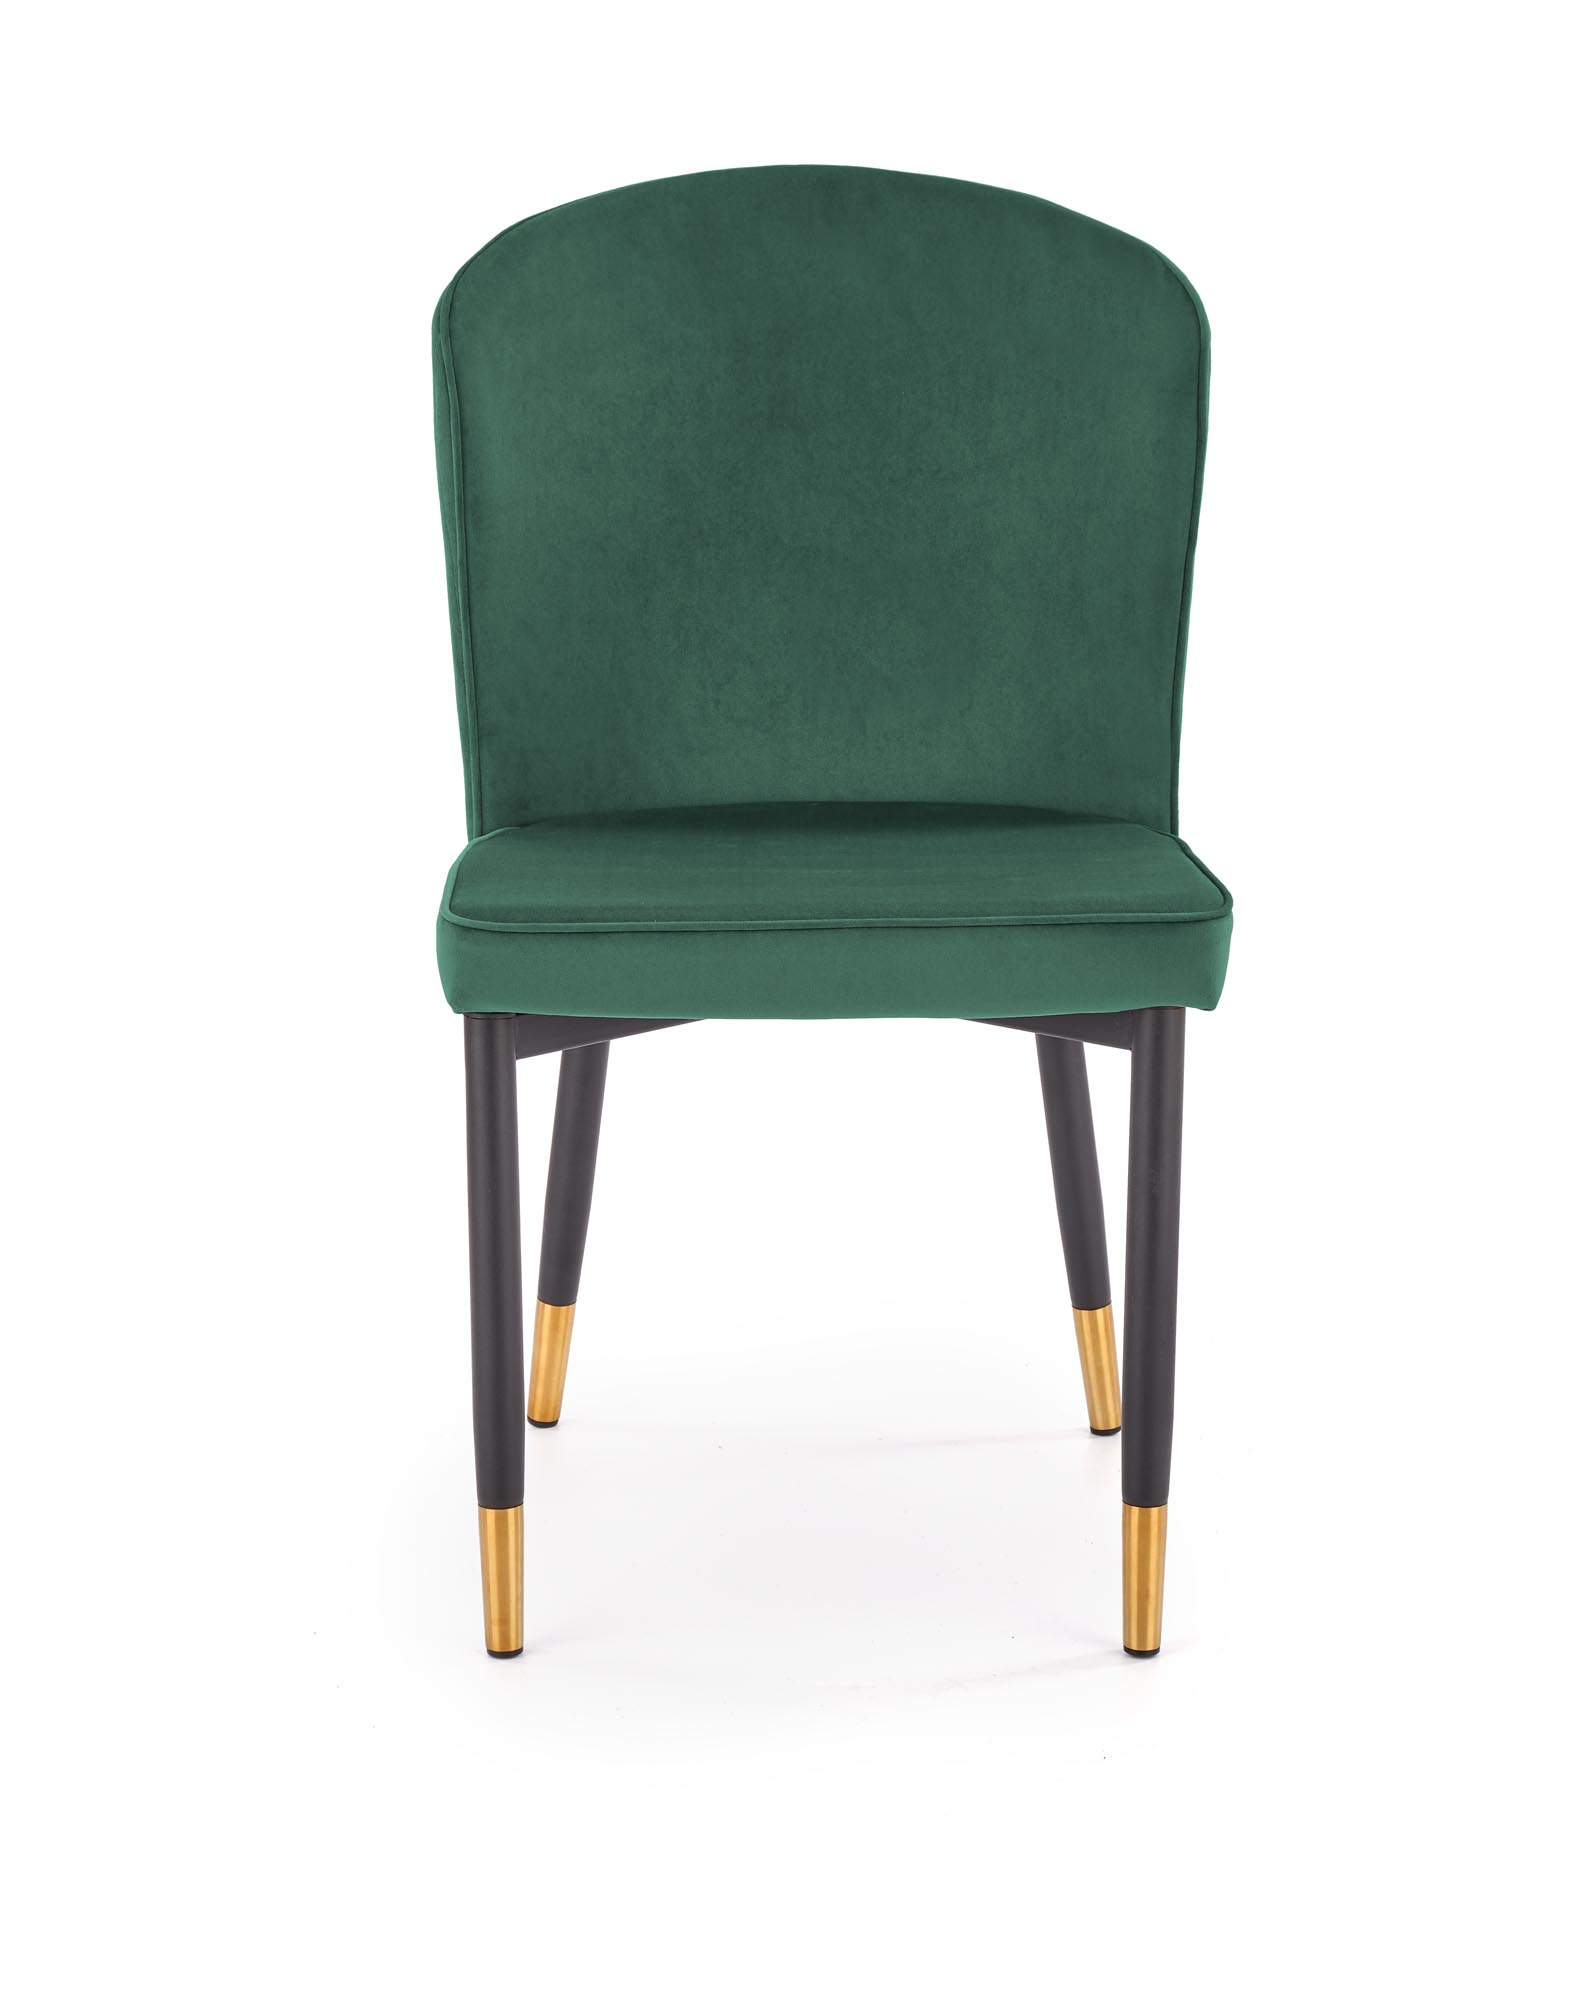 K446 krzesło ciemny zielony k446 krzesło ciemny zielony